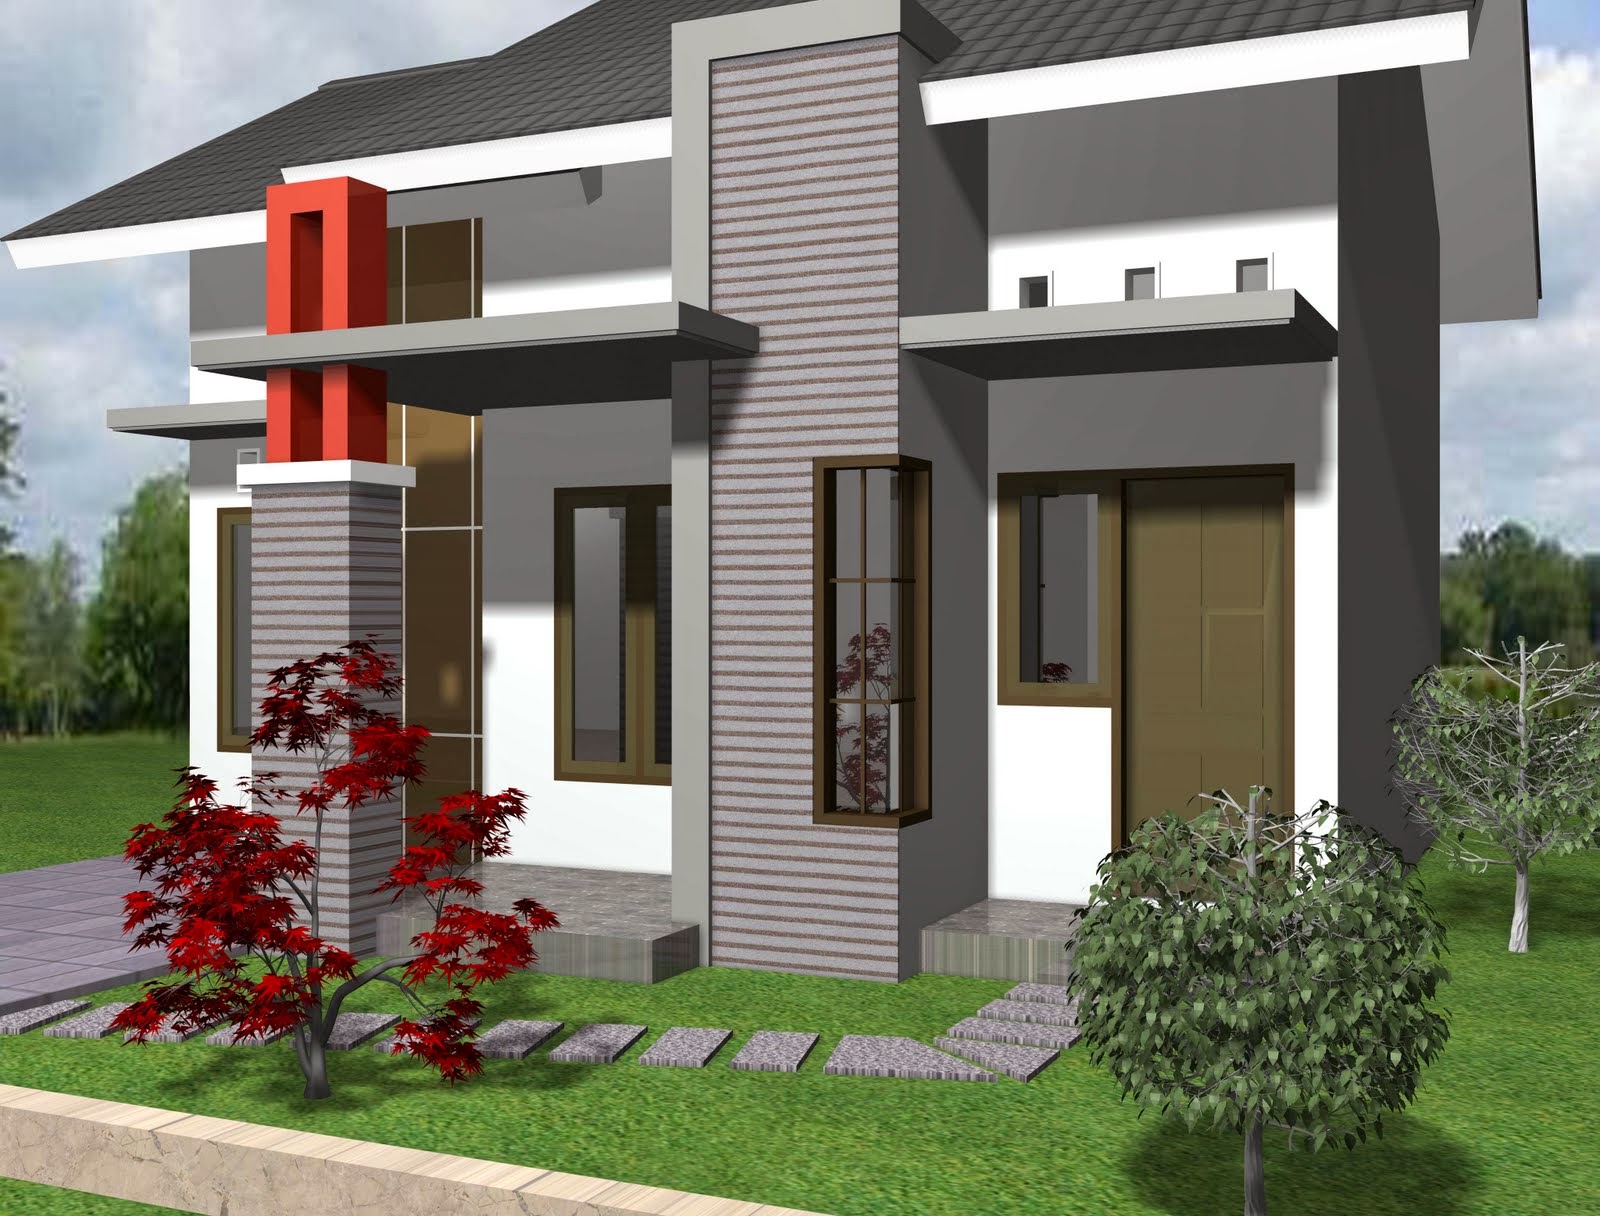 Contoh Desain Rumah Minimalis 1 Lantai Modern - Desain Denah Rumah 